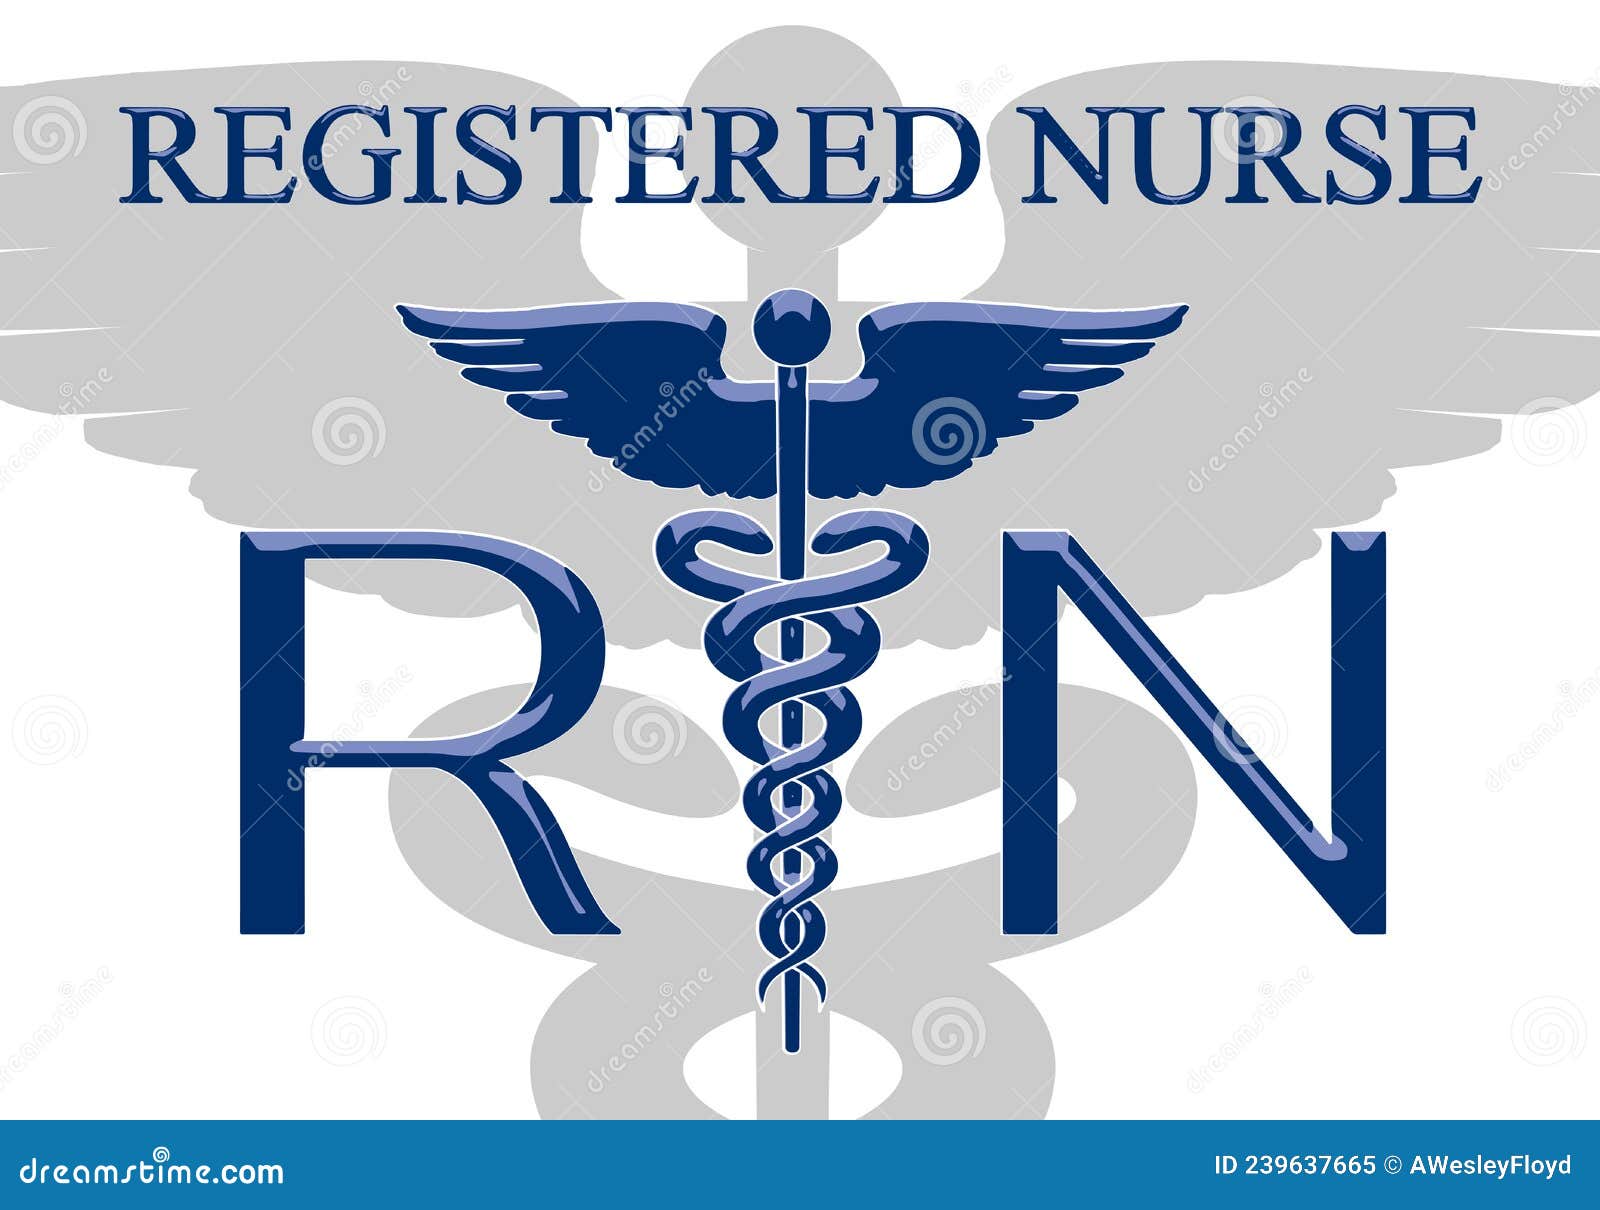 Registered Nurse Graphic Emblem B Stock Vector - Illustration of  registered, graphic: 239637665